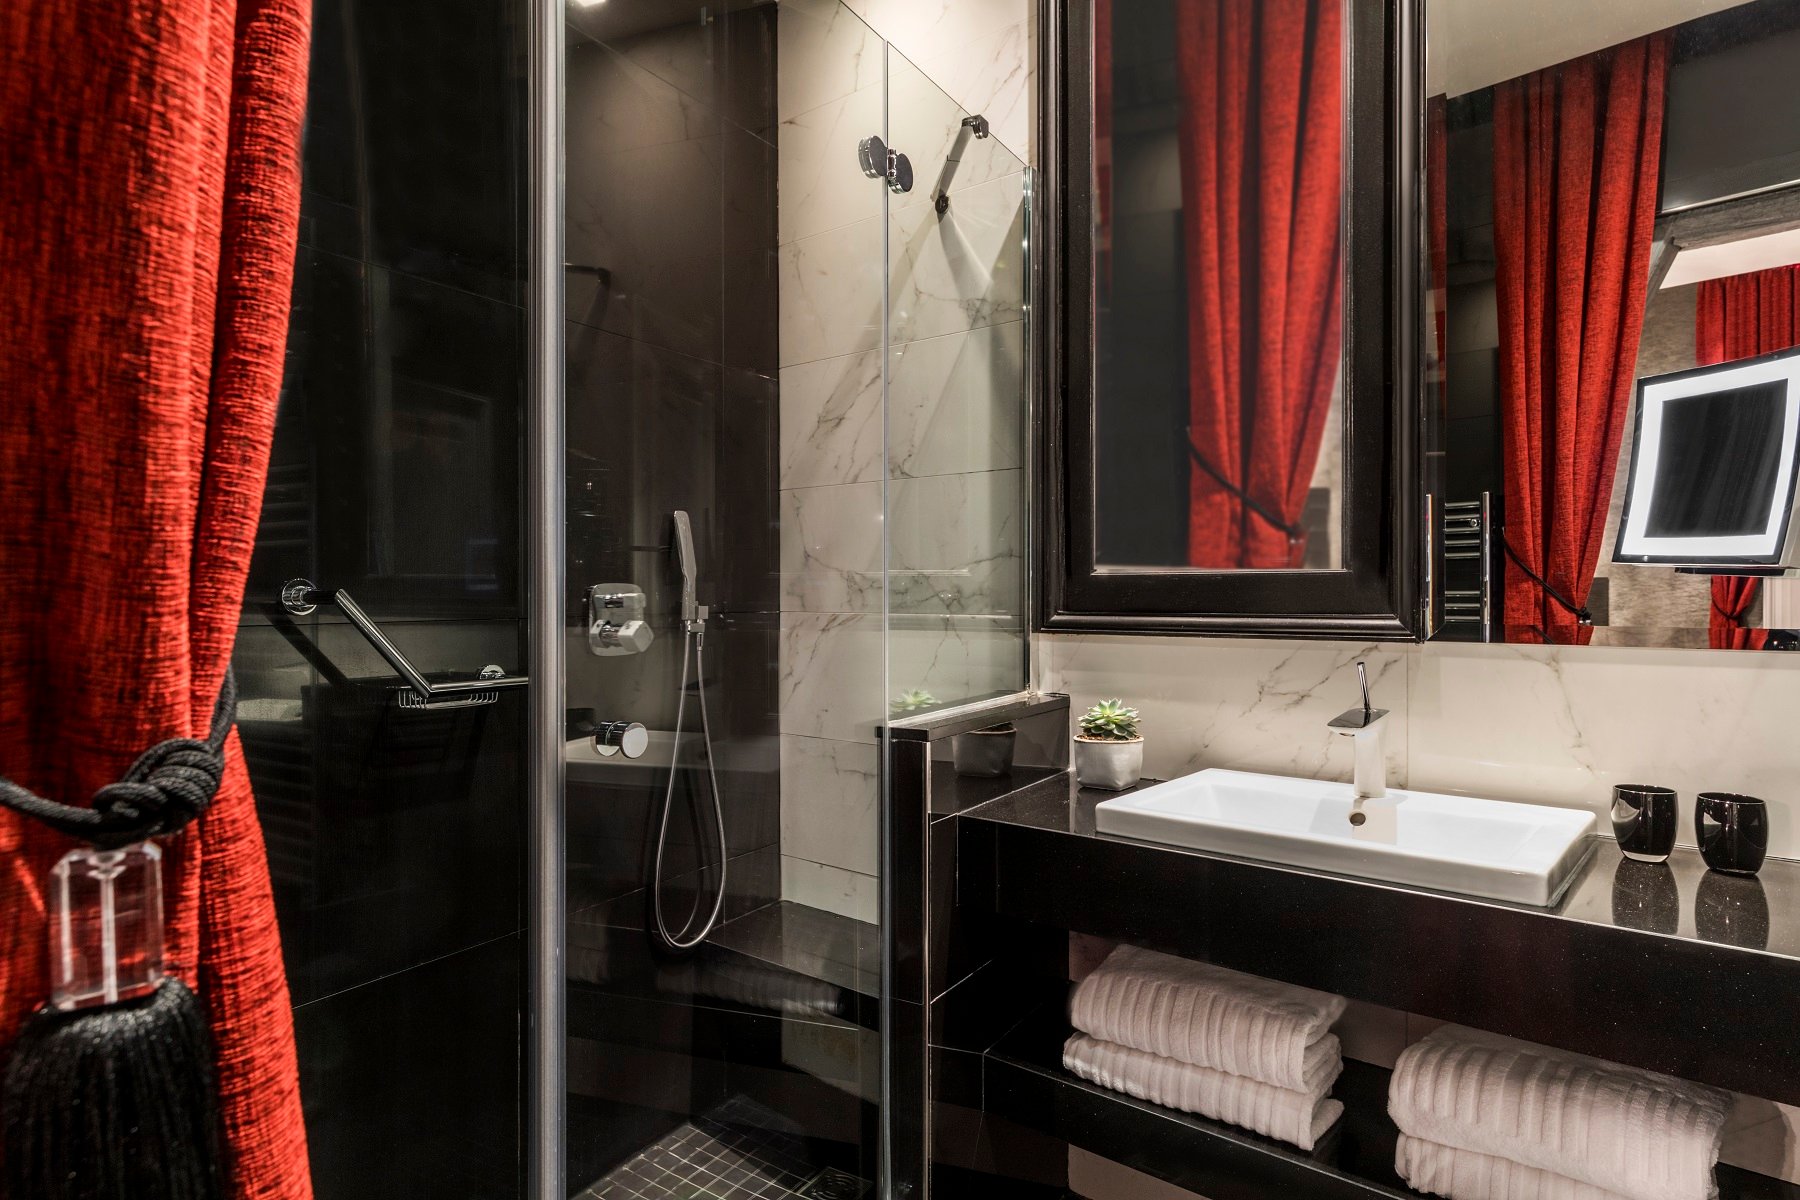 Maison Albar Hotels Le Champs-Elysées salle de bain chambre supérieure